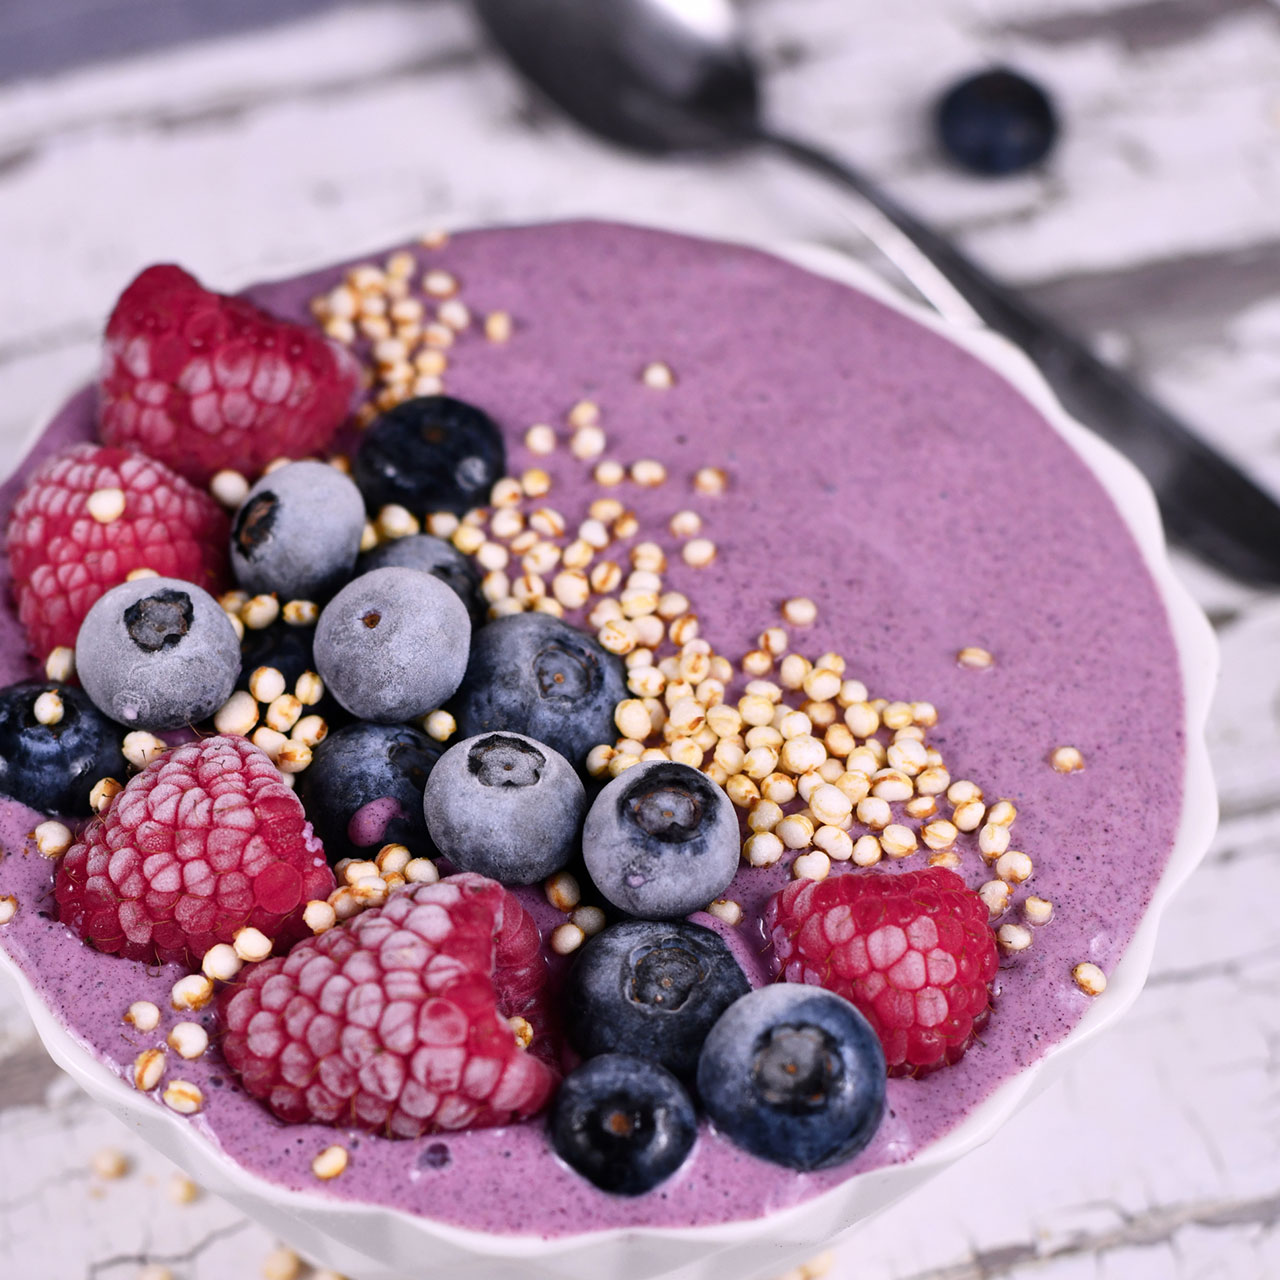 yogurt bowl with berries and puffed quinoa